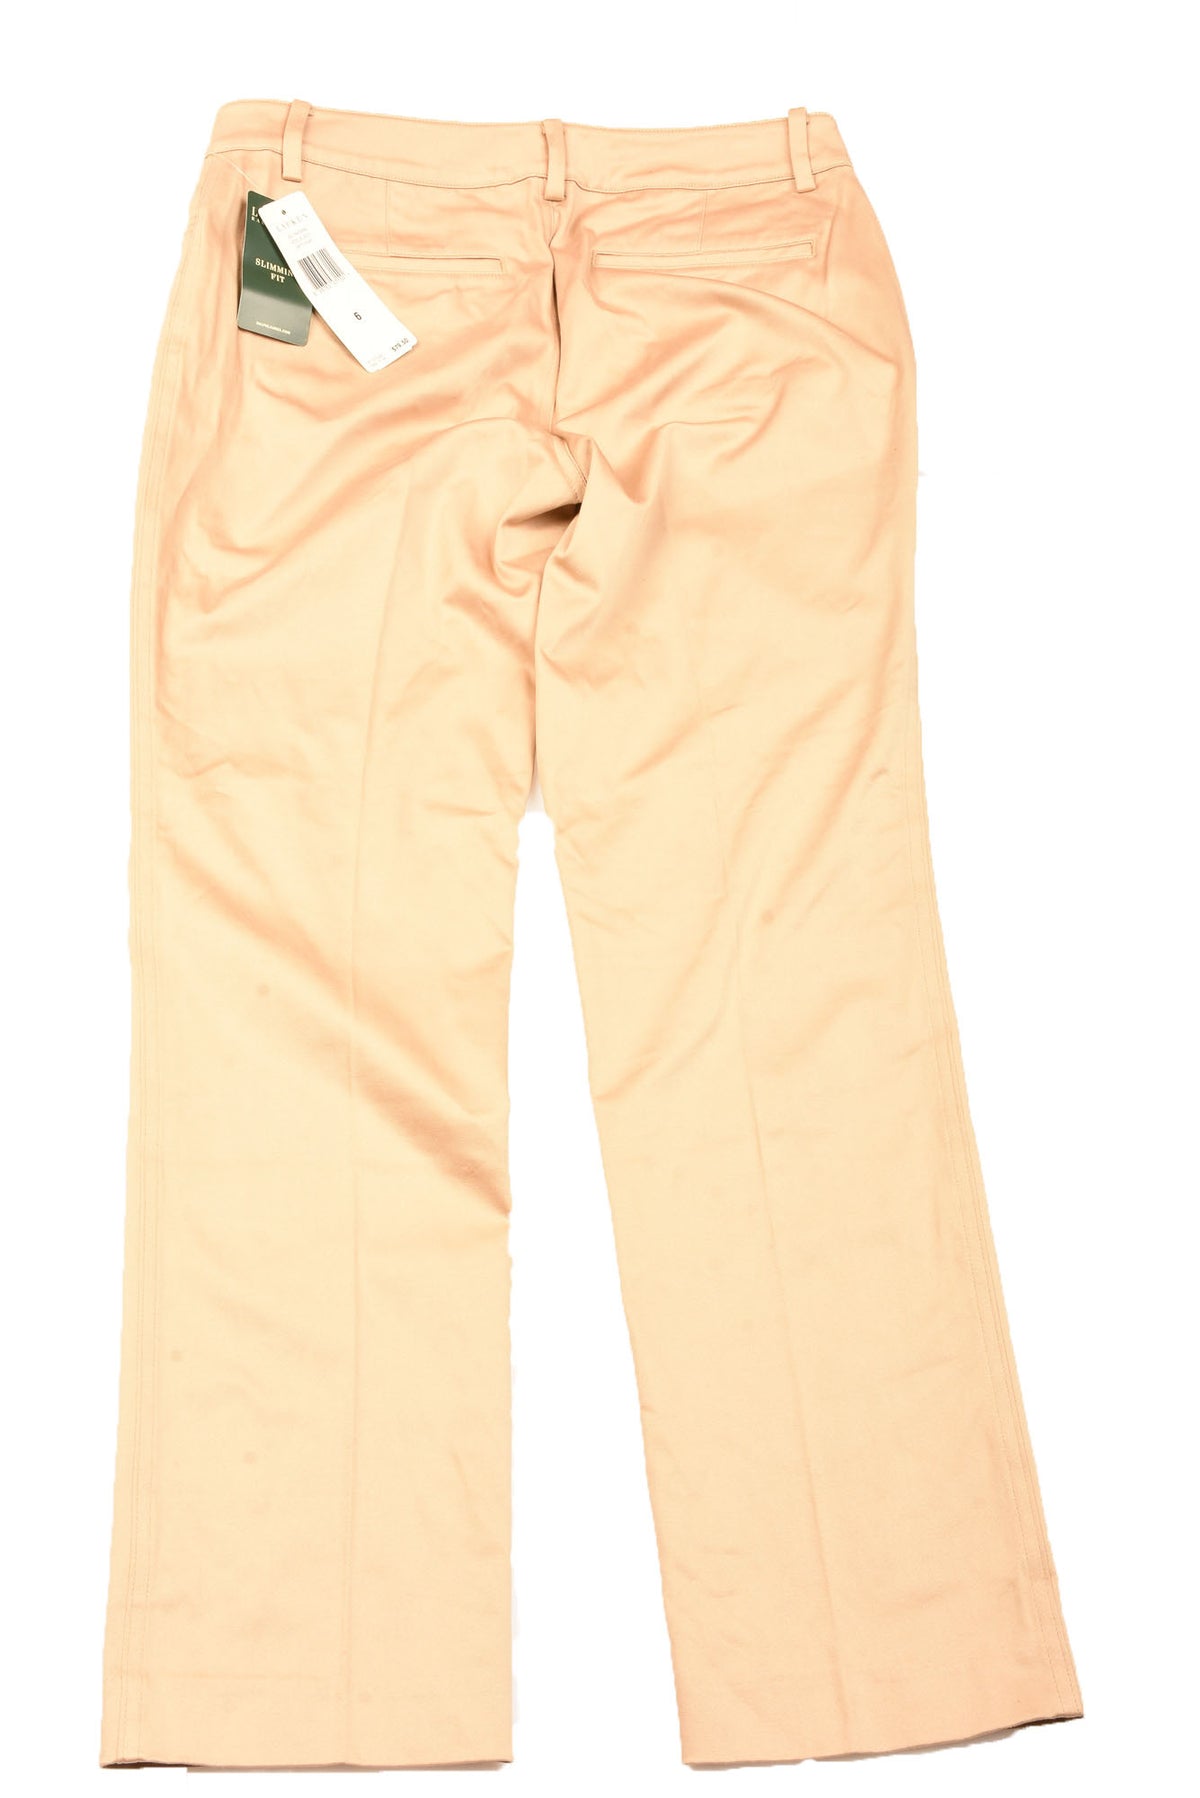 Buy Lauren by Ralph Lauren women regular fit cargo pants tan Online |  Brands For Less